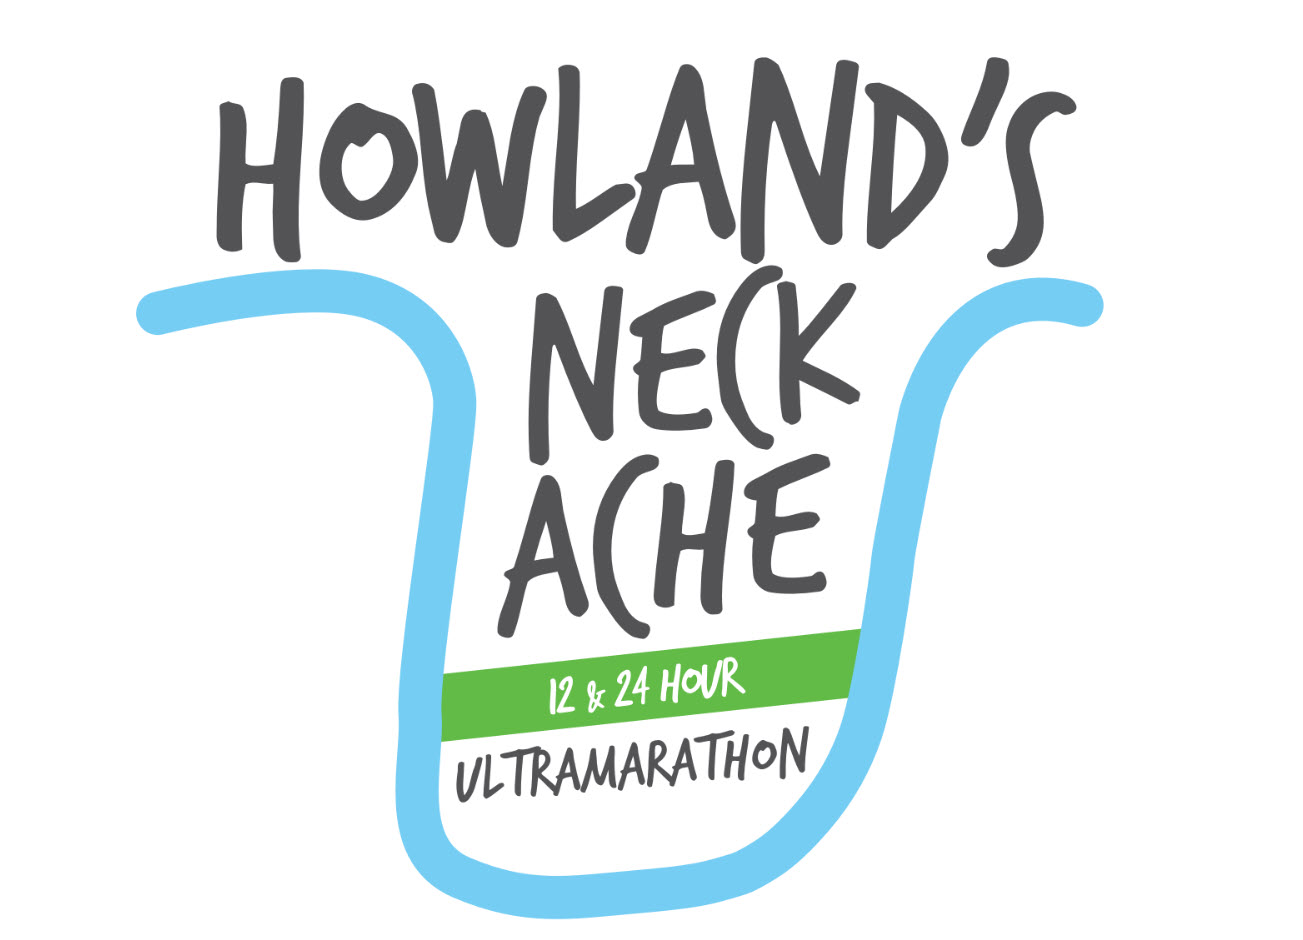 Howland’s Neck Ache 6, 12 & 24 Hour Ultra logo on RaceRaves